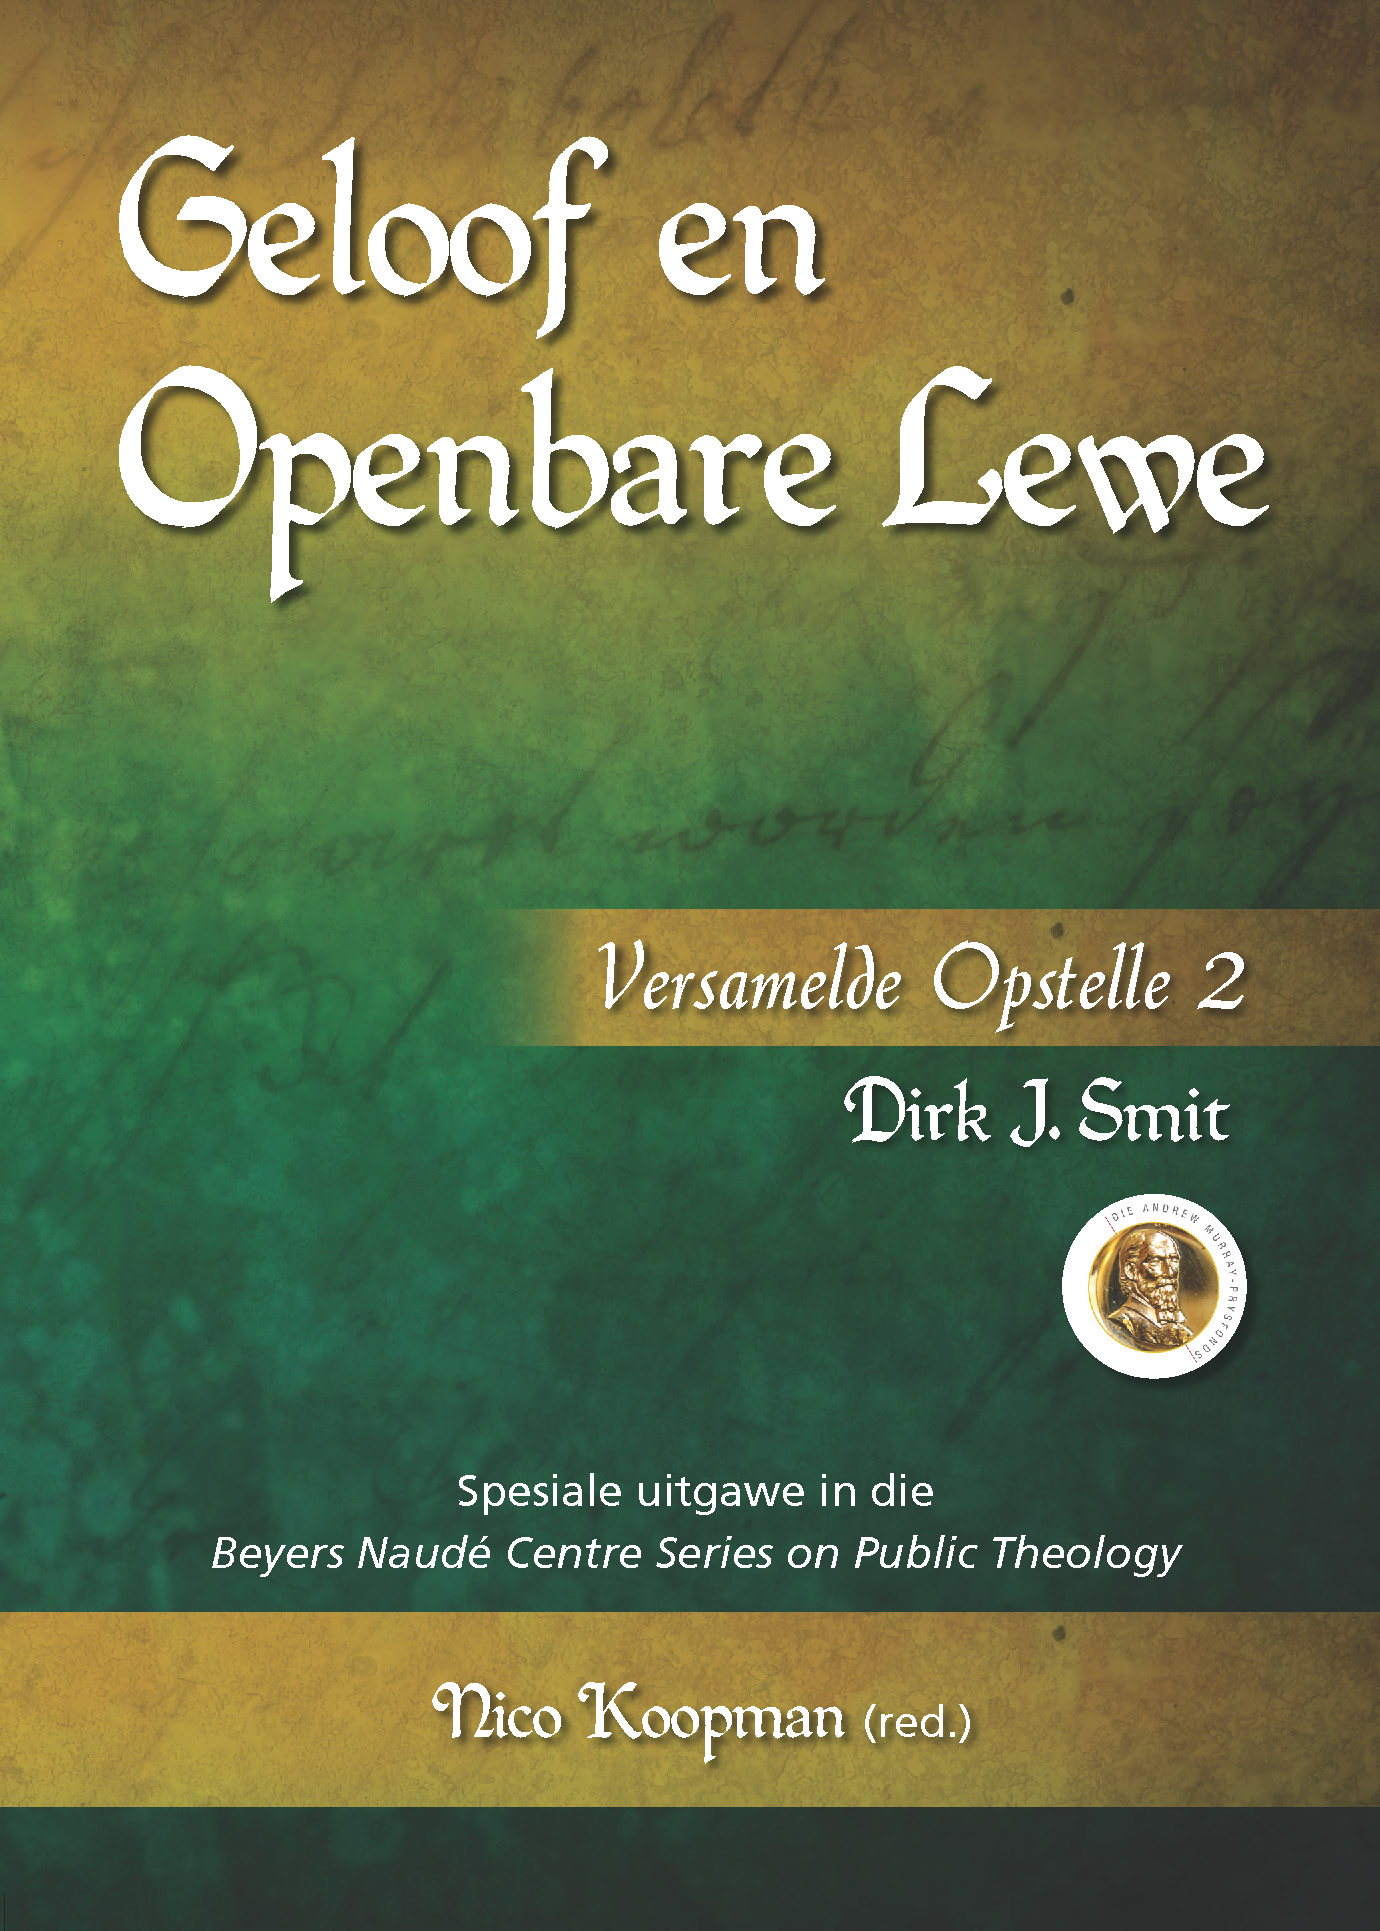 Geloof en Openbare Lewe COVER front.jpg